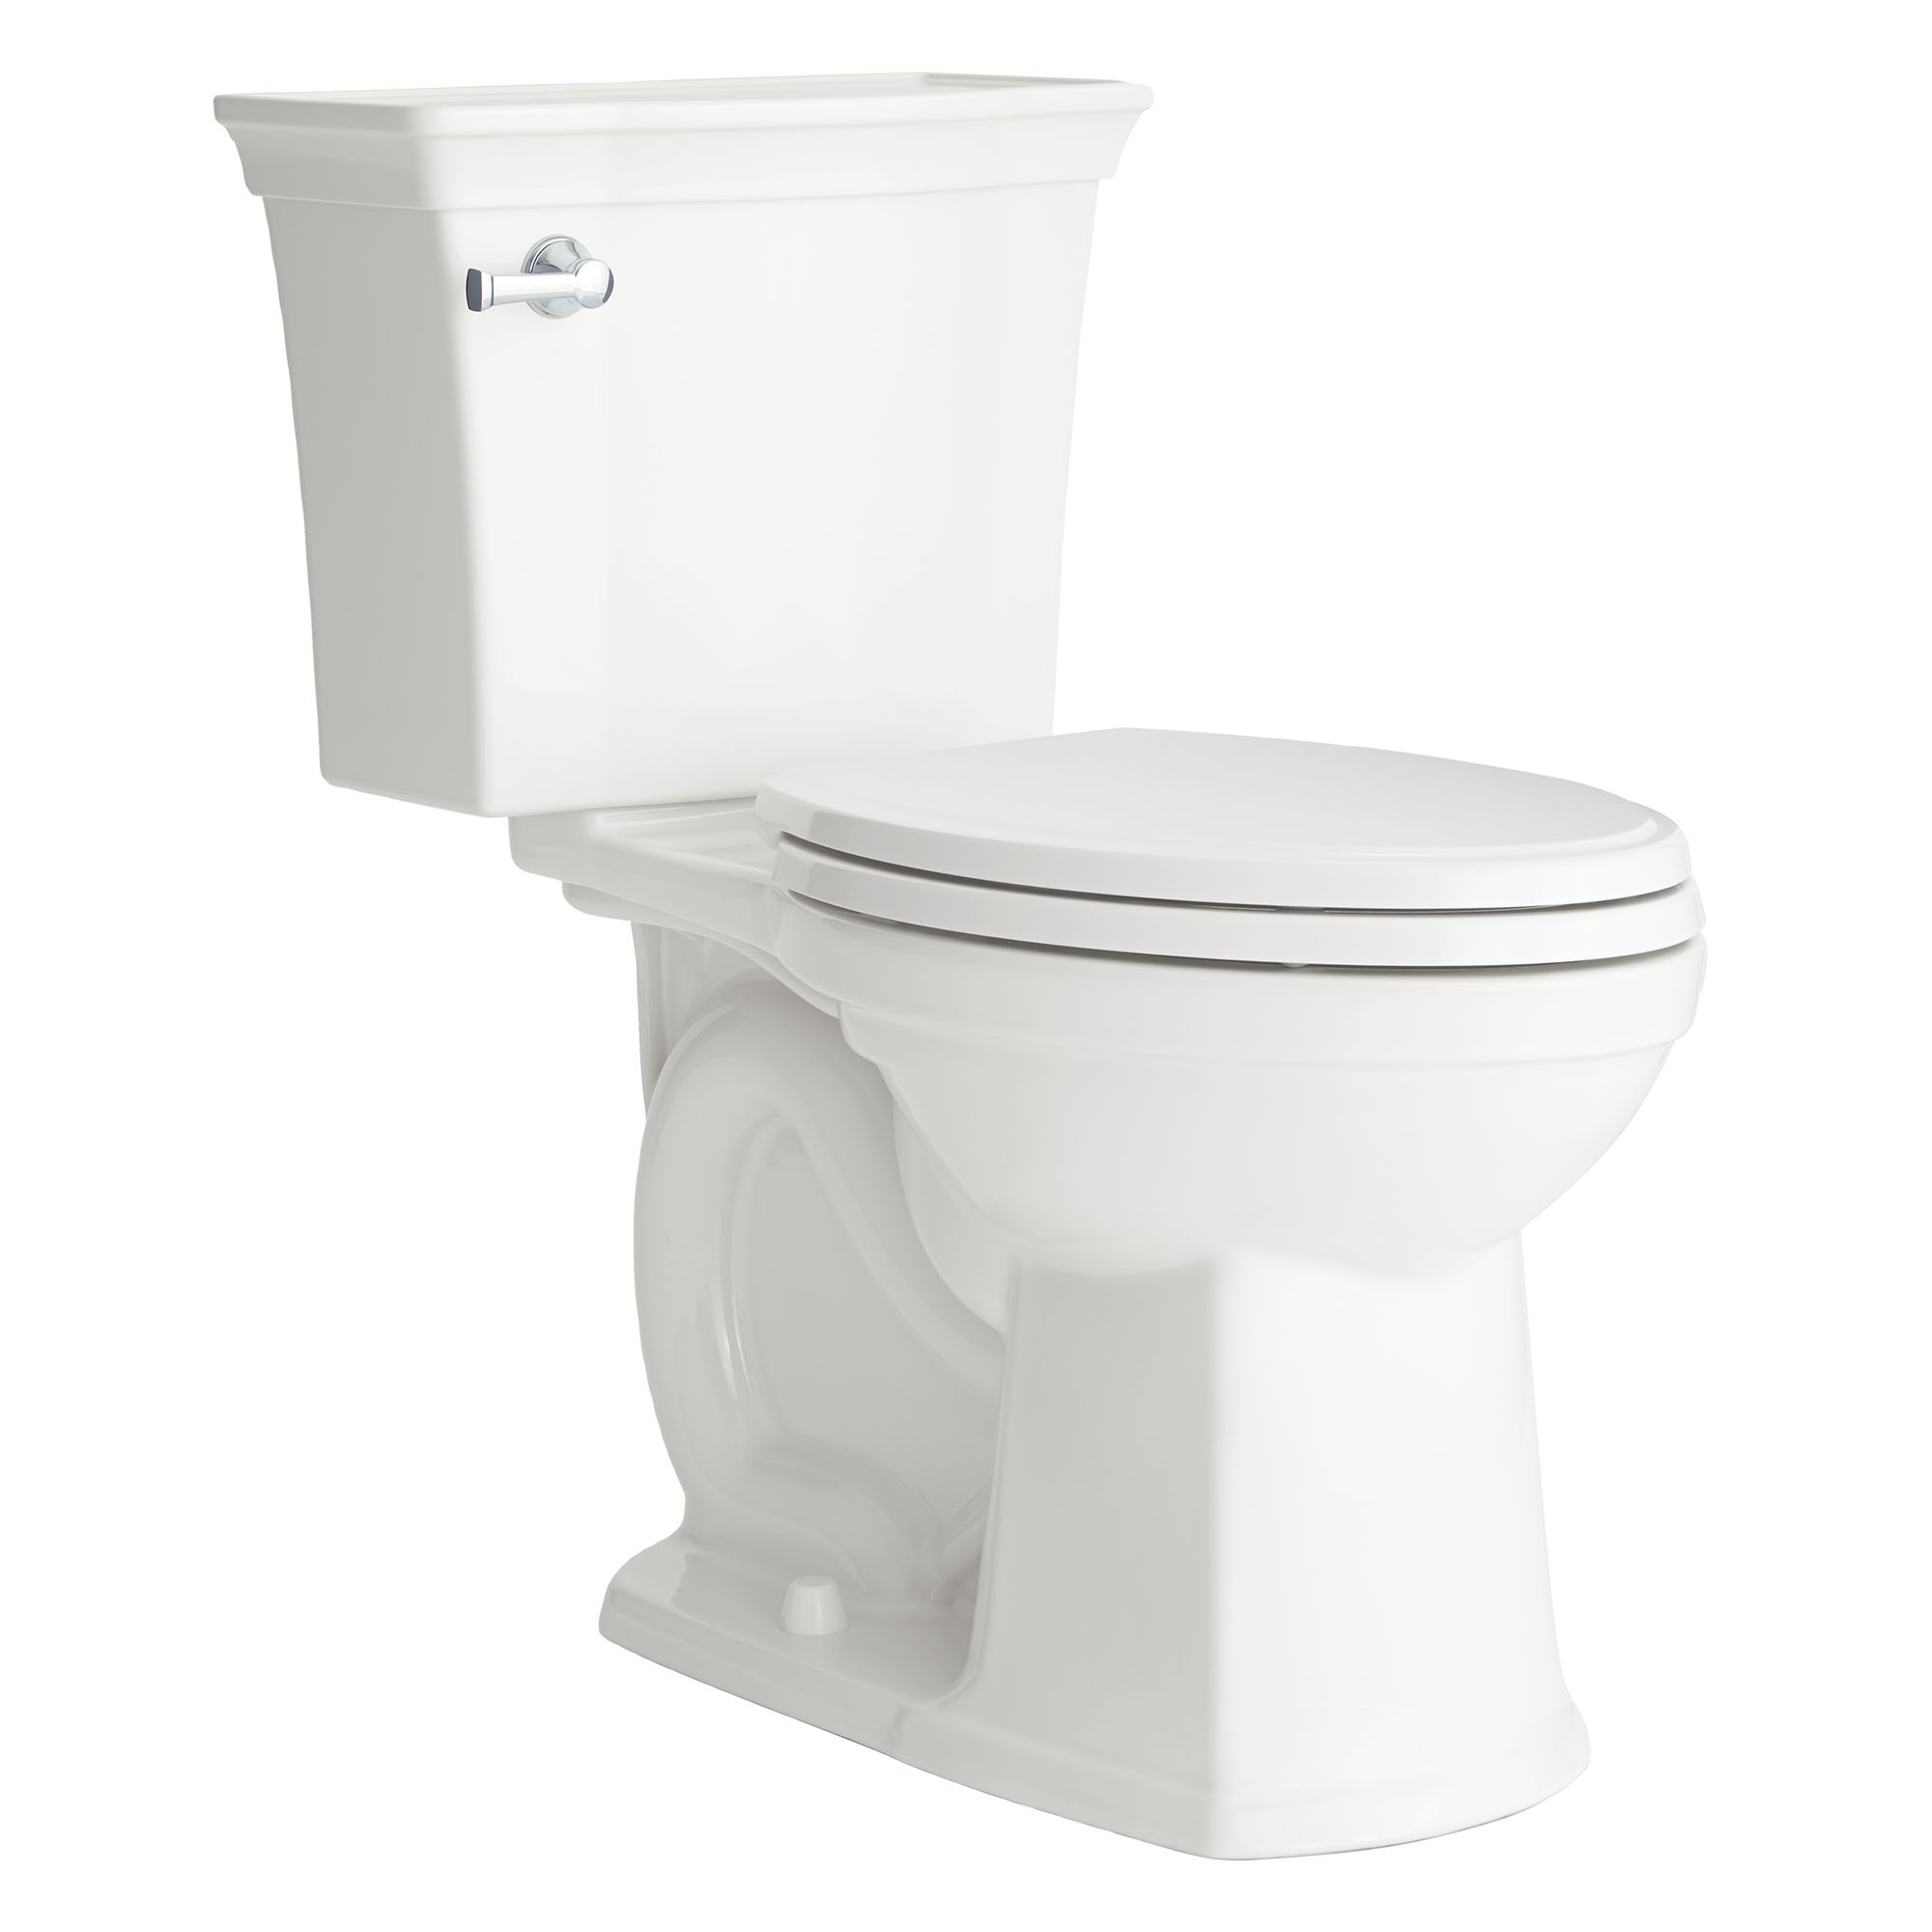 Toilette Estate VorMax, 2 pièces, 1,28 gpc/4,8 lpc, à cuvette allongée à hauteur de chaise, sans siège